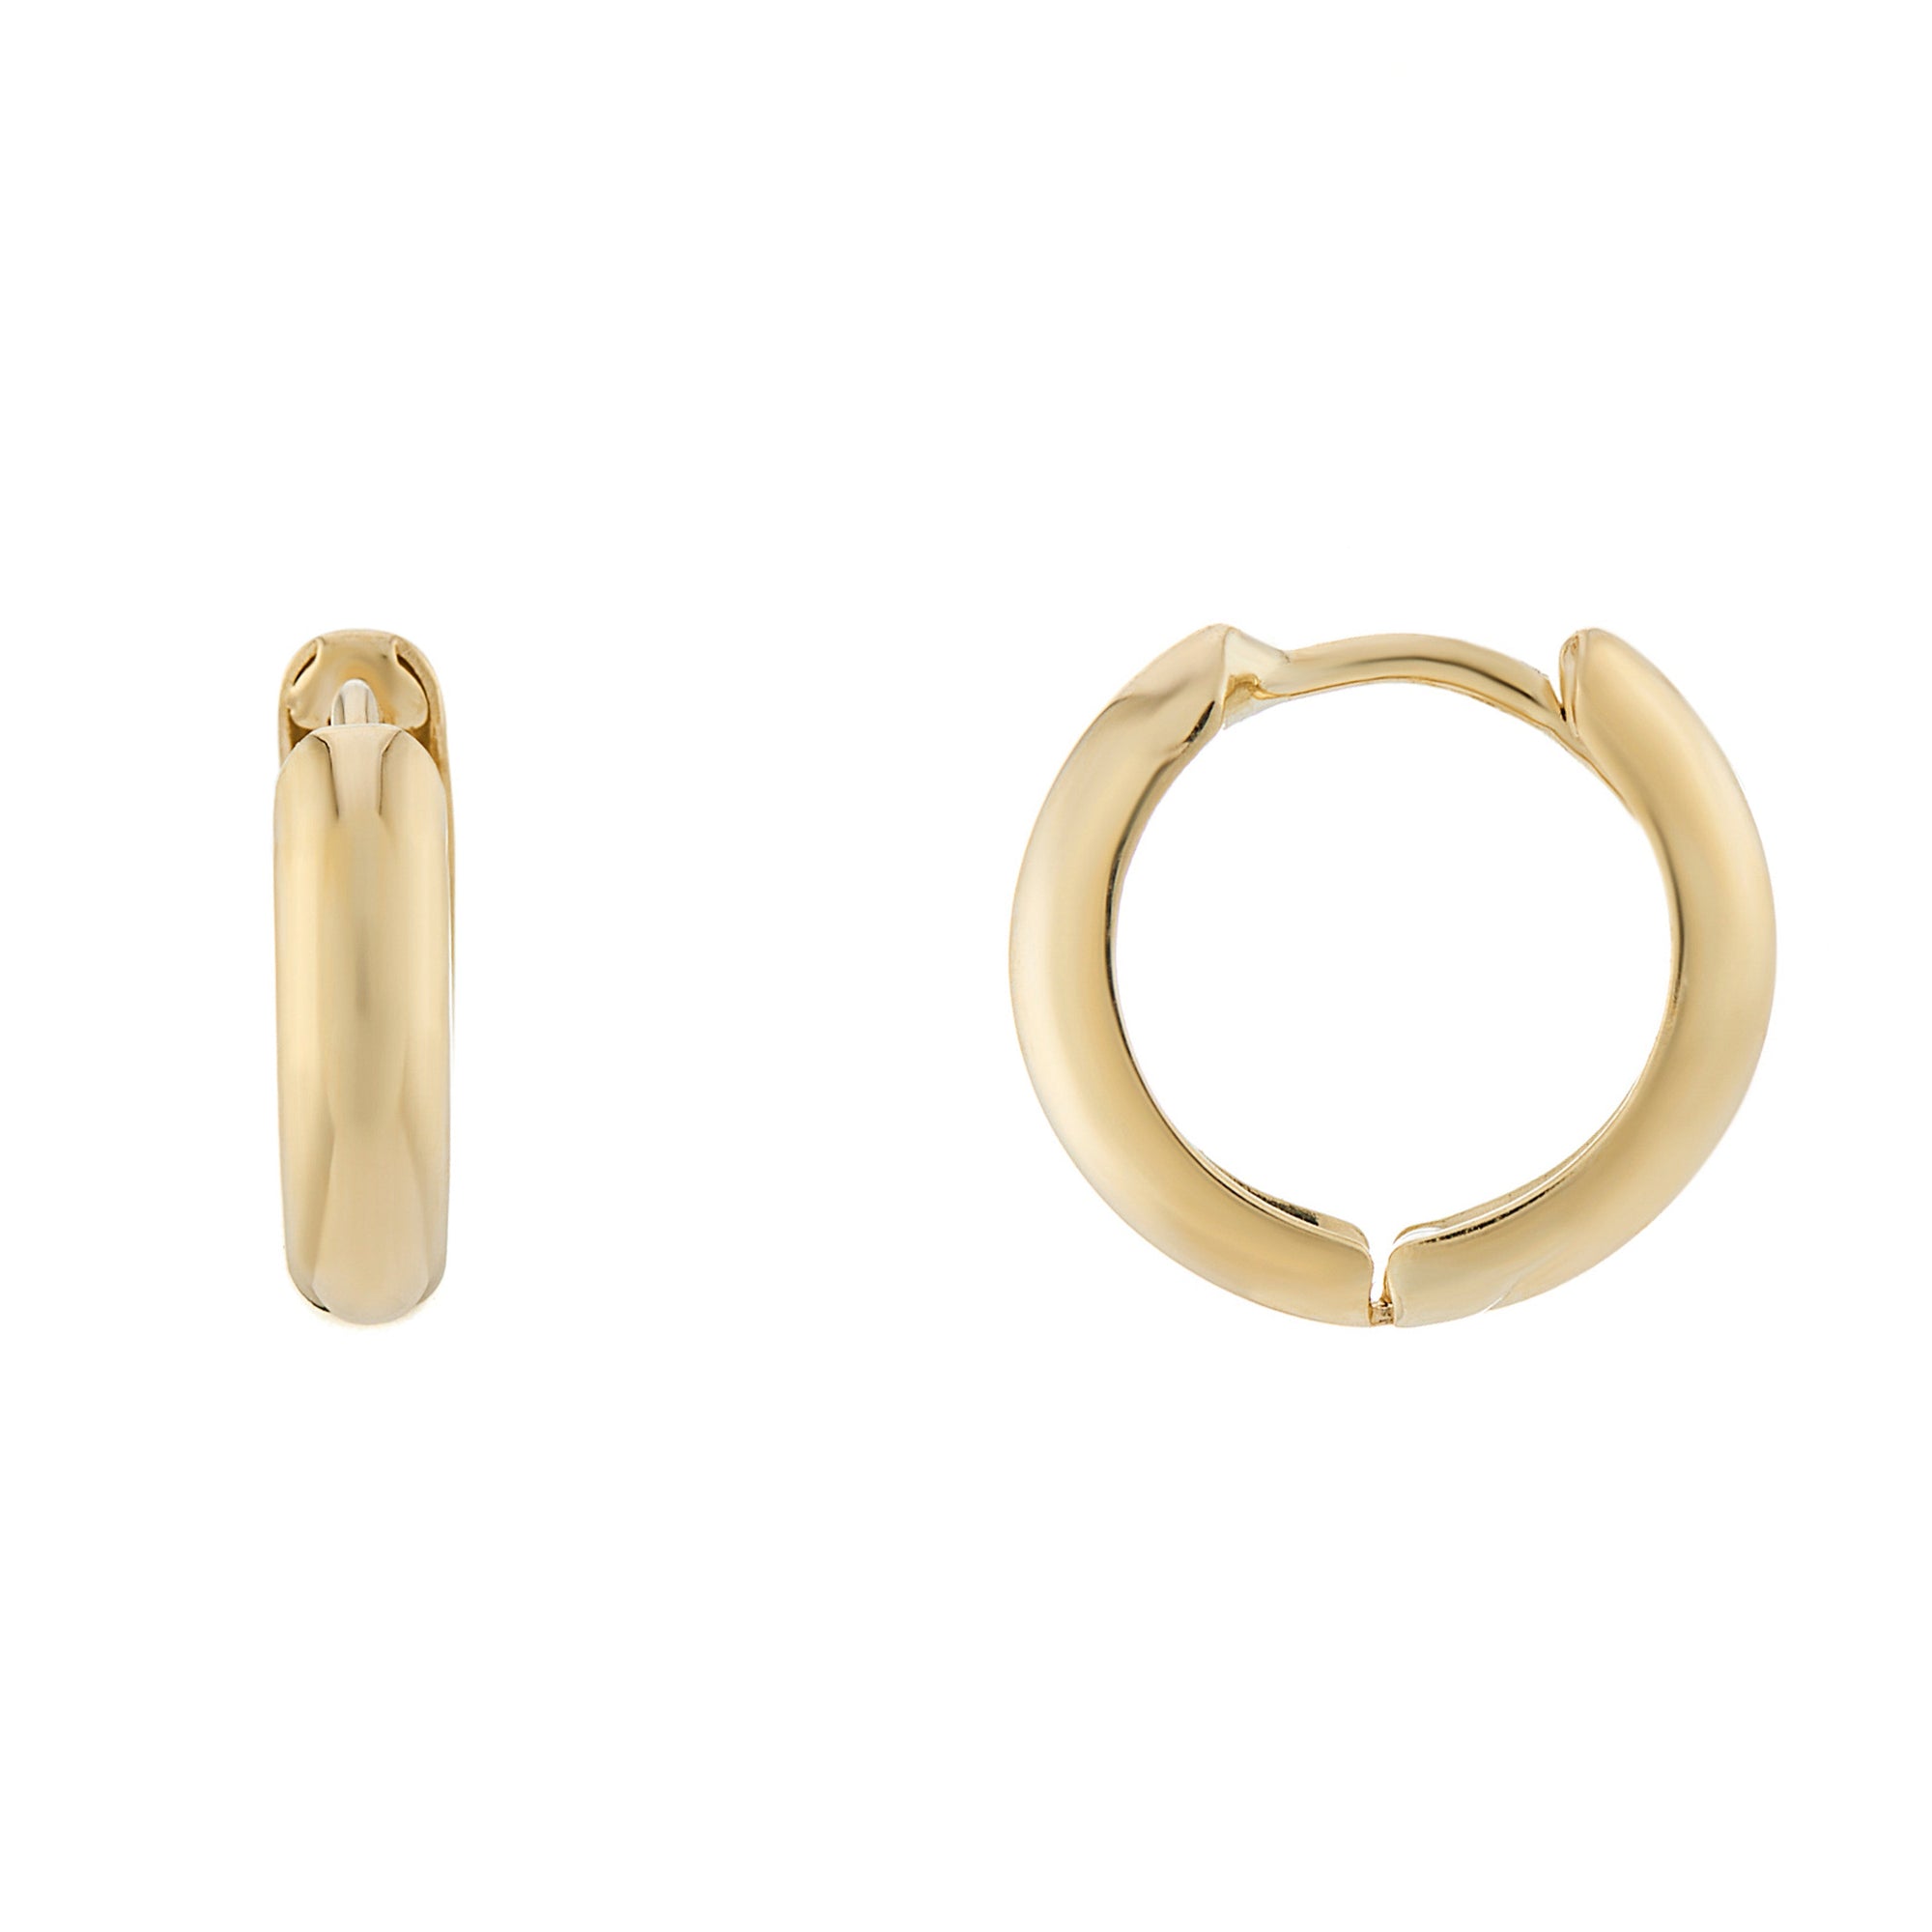 9ct gold 9mm inside diameter huggy earrings